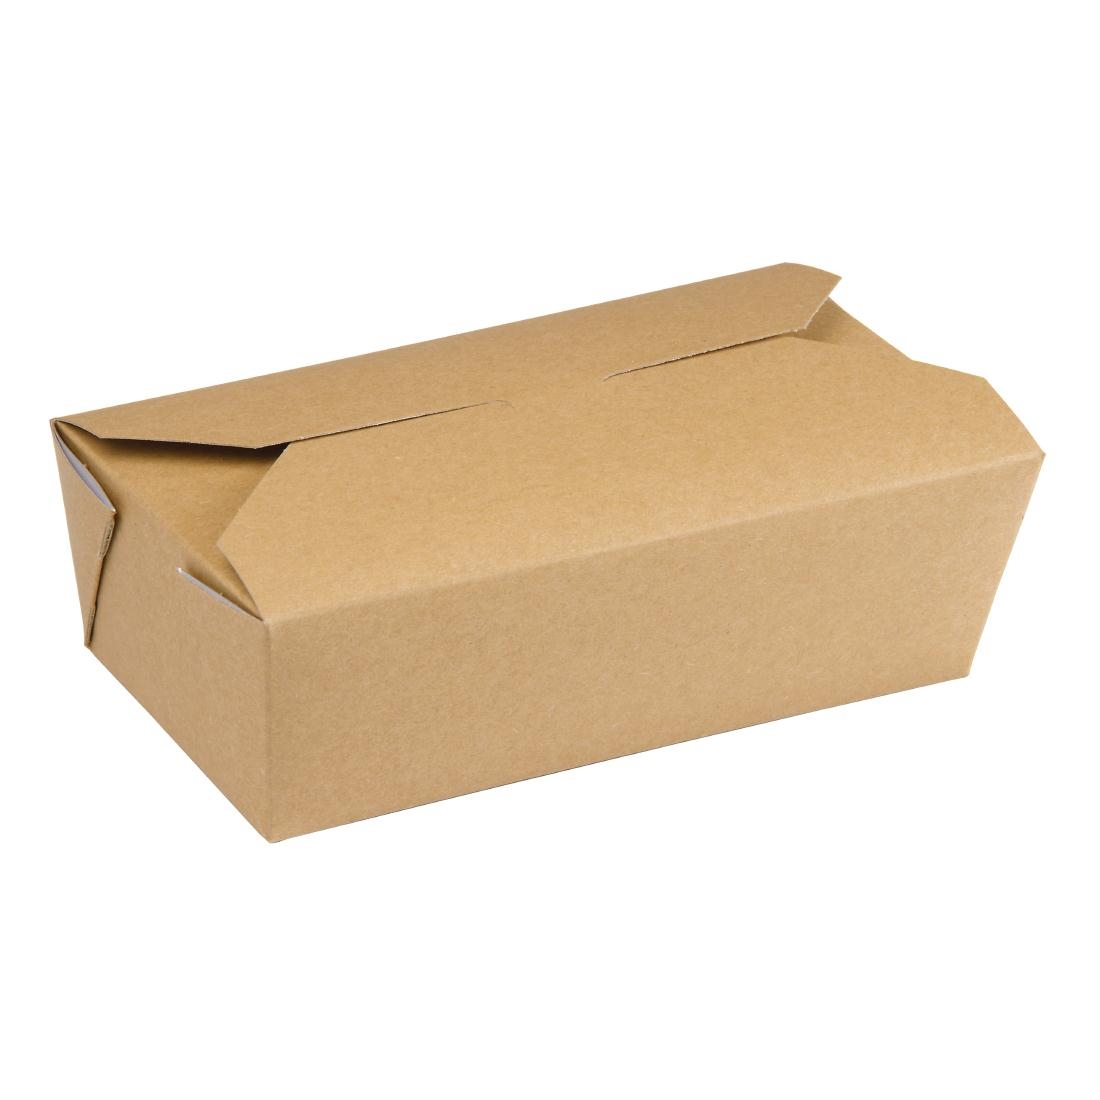 dm173_food-carton-rectangular-closed